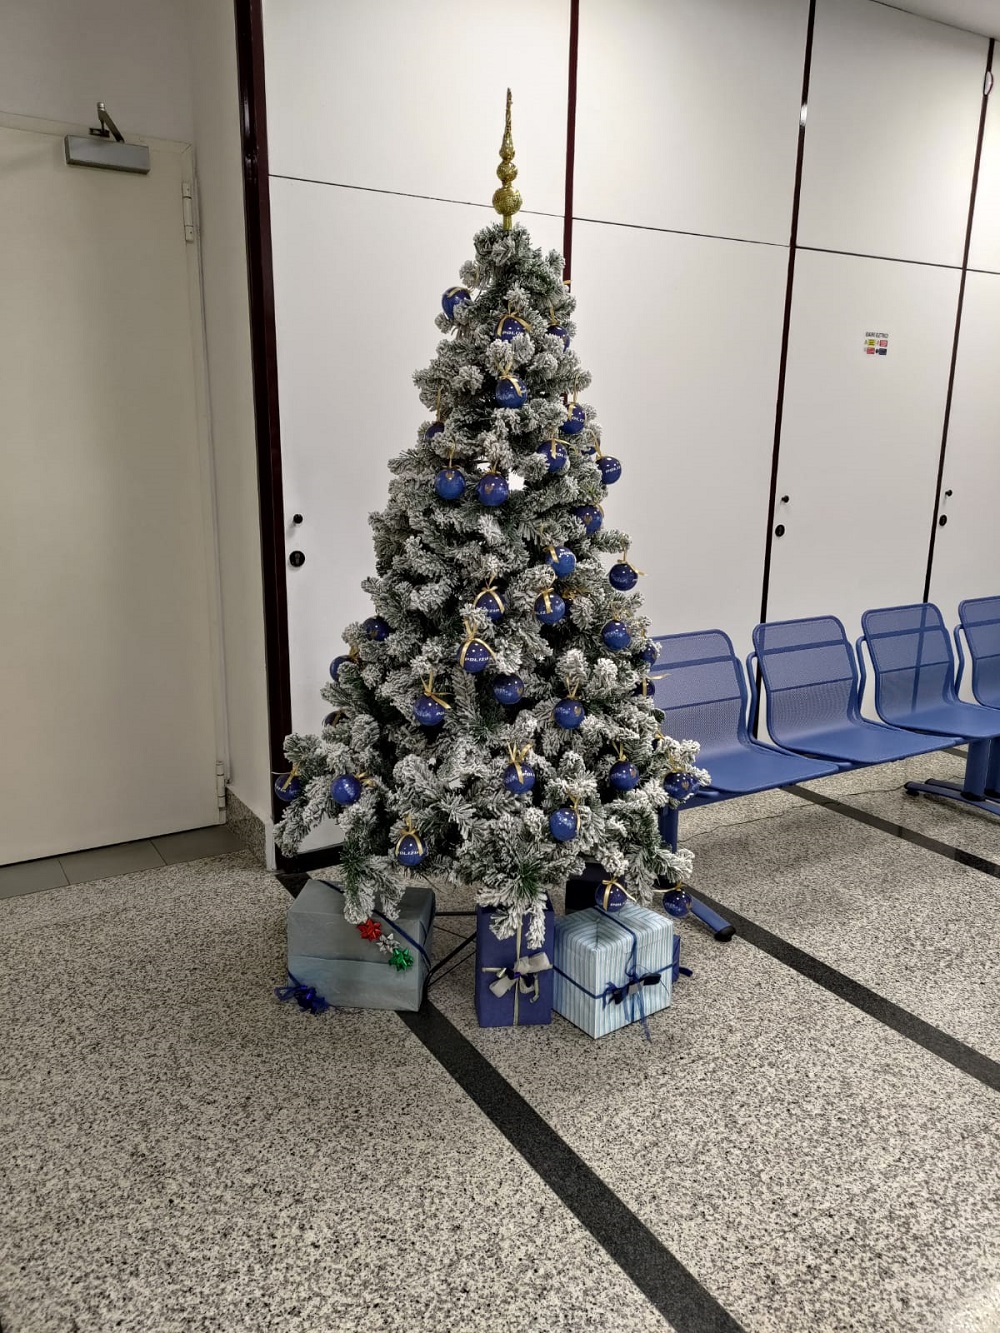 Gli alberi di Natale nelle città d’Italia con le decorazioni natalizie della Polizia di Stato: Rimini